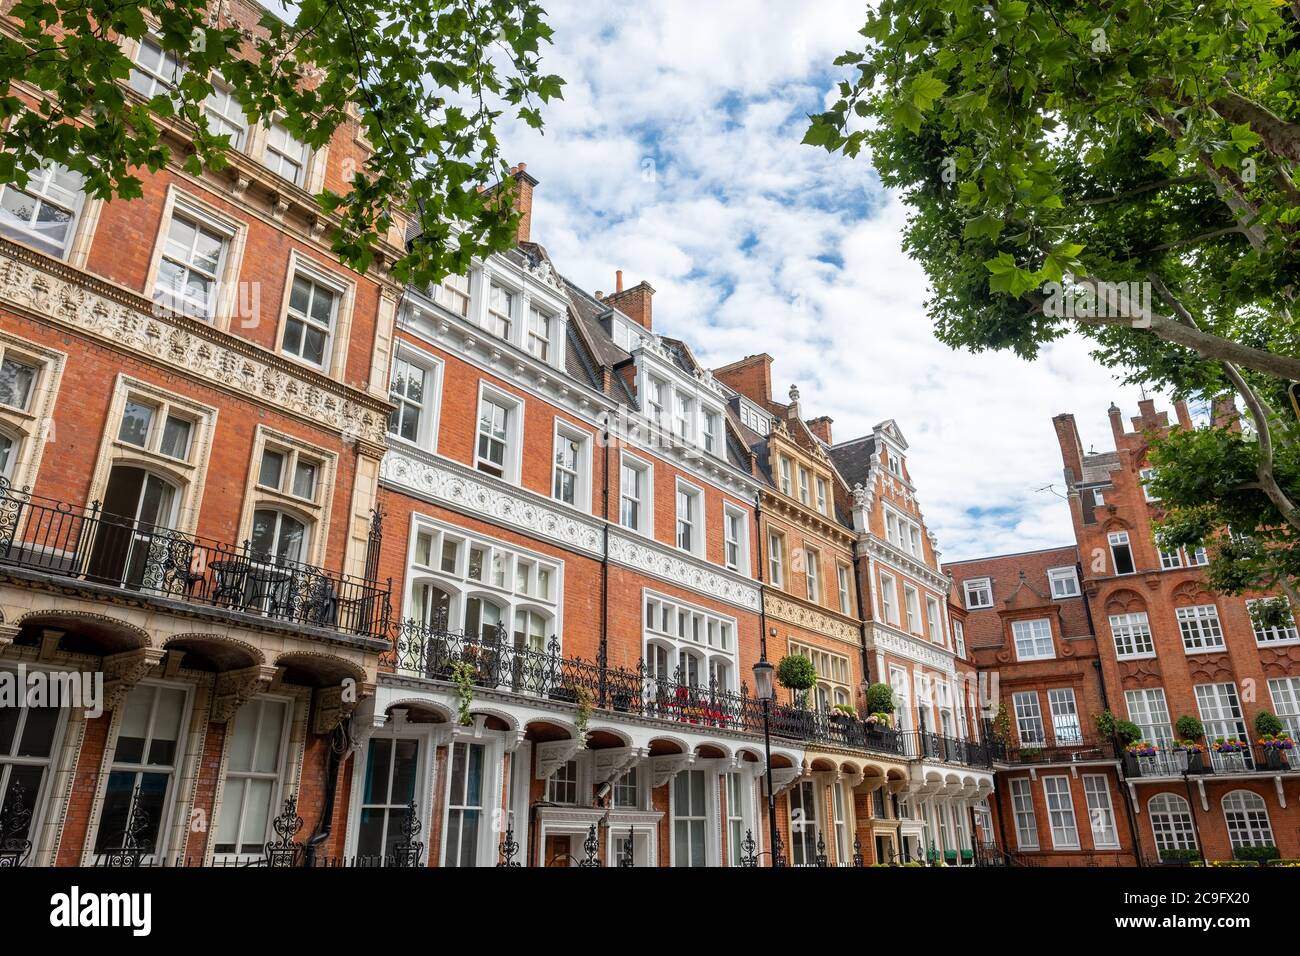 Londres, juillet, 2020: Rue résidentielle de belles maisons de ville de Londres en terrasses de briques rouges à Kensington court, à l'ouest de Londres Banque D'Images